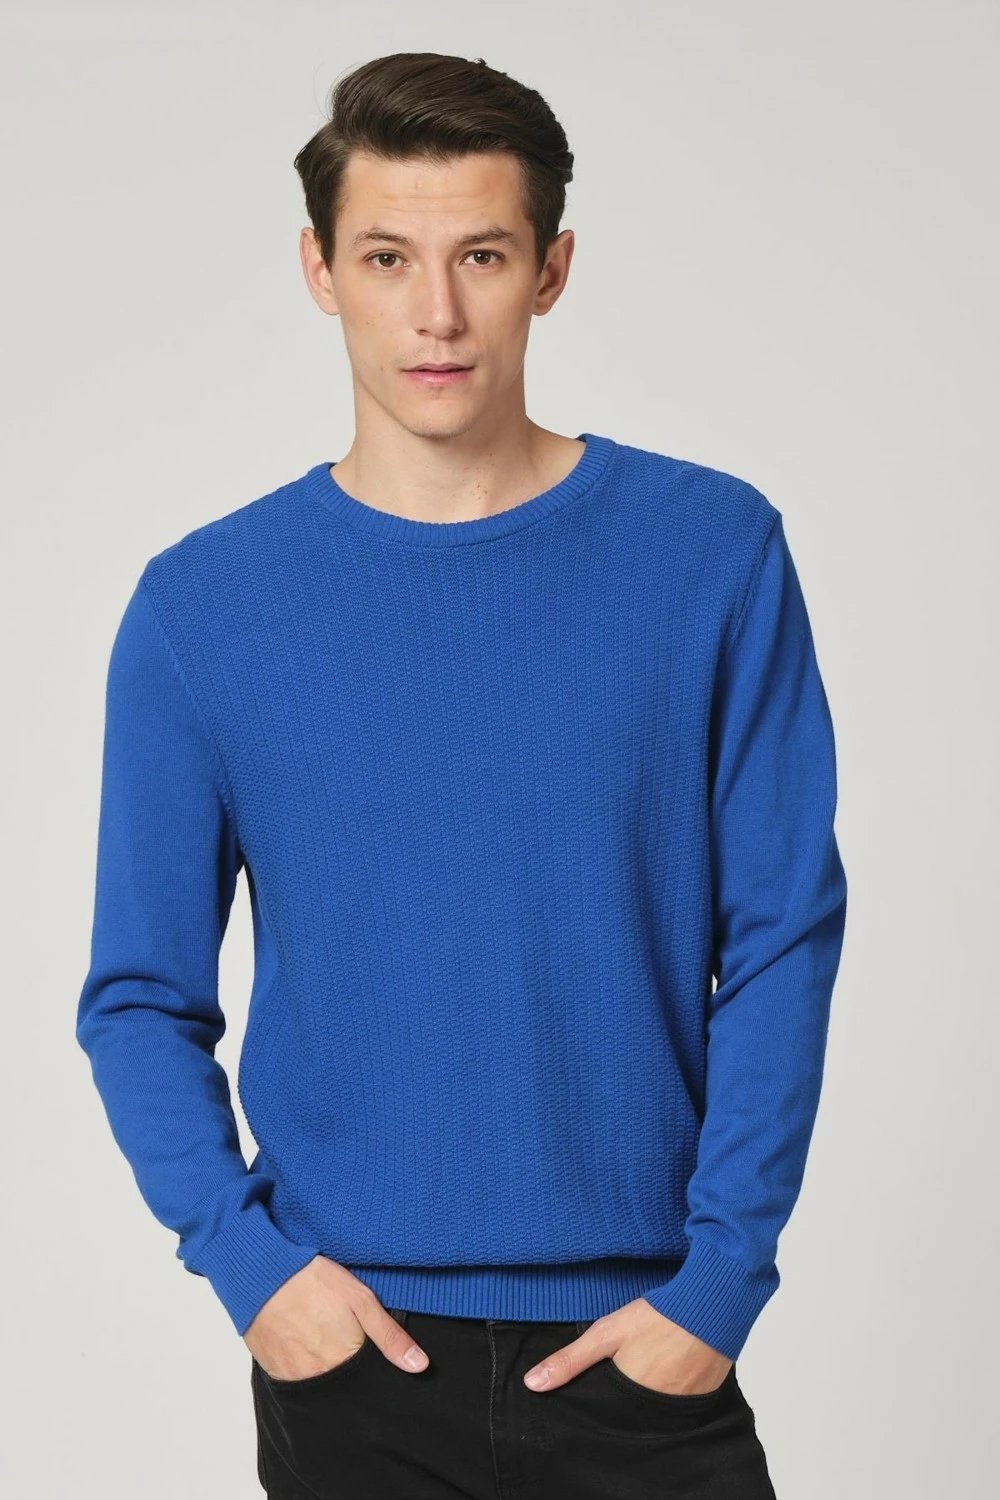 Bluzë për meshkuj Alexander Gardi, e kaltër